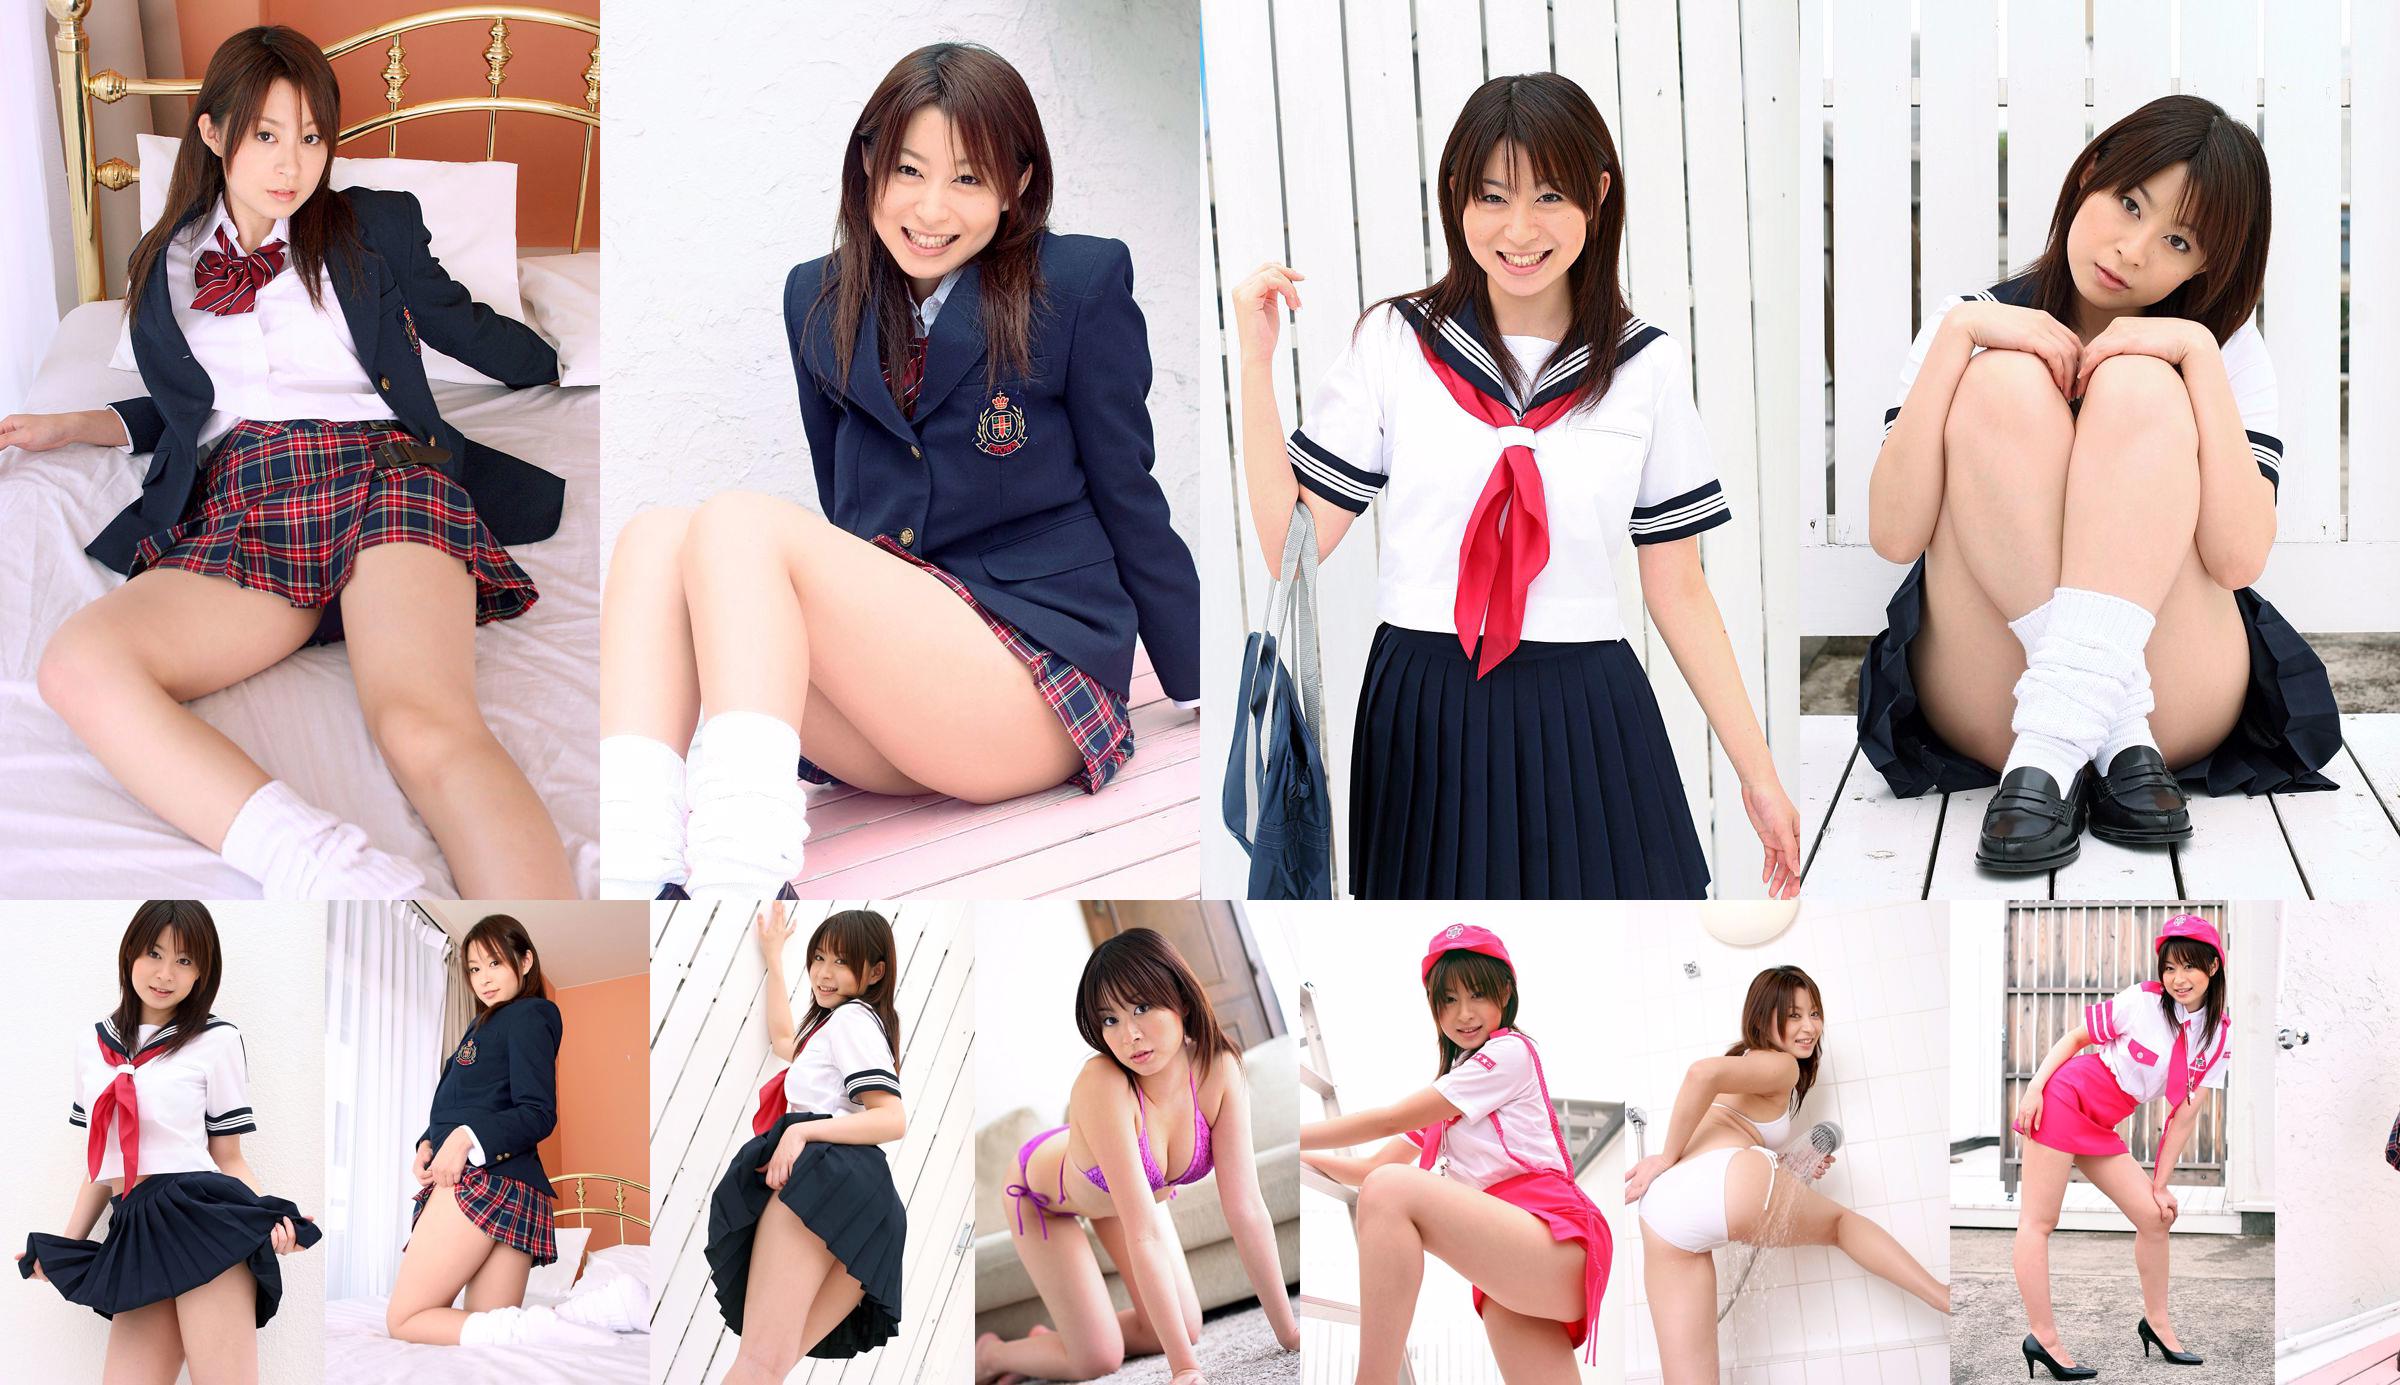 [DGC] NO.324 Yukiho Hirate Hirate Yukiho Uniform Schönes Mädchen Himmel No.bcdb59 Seite 24